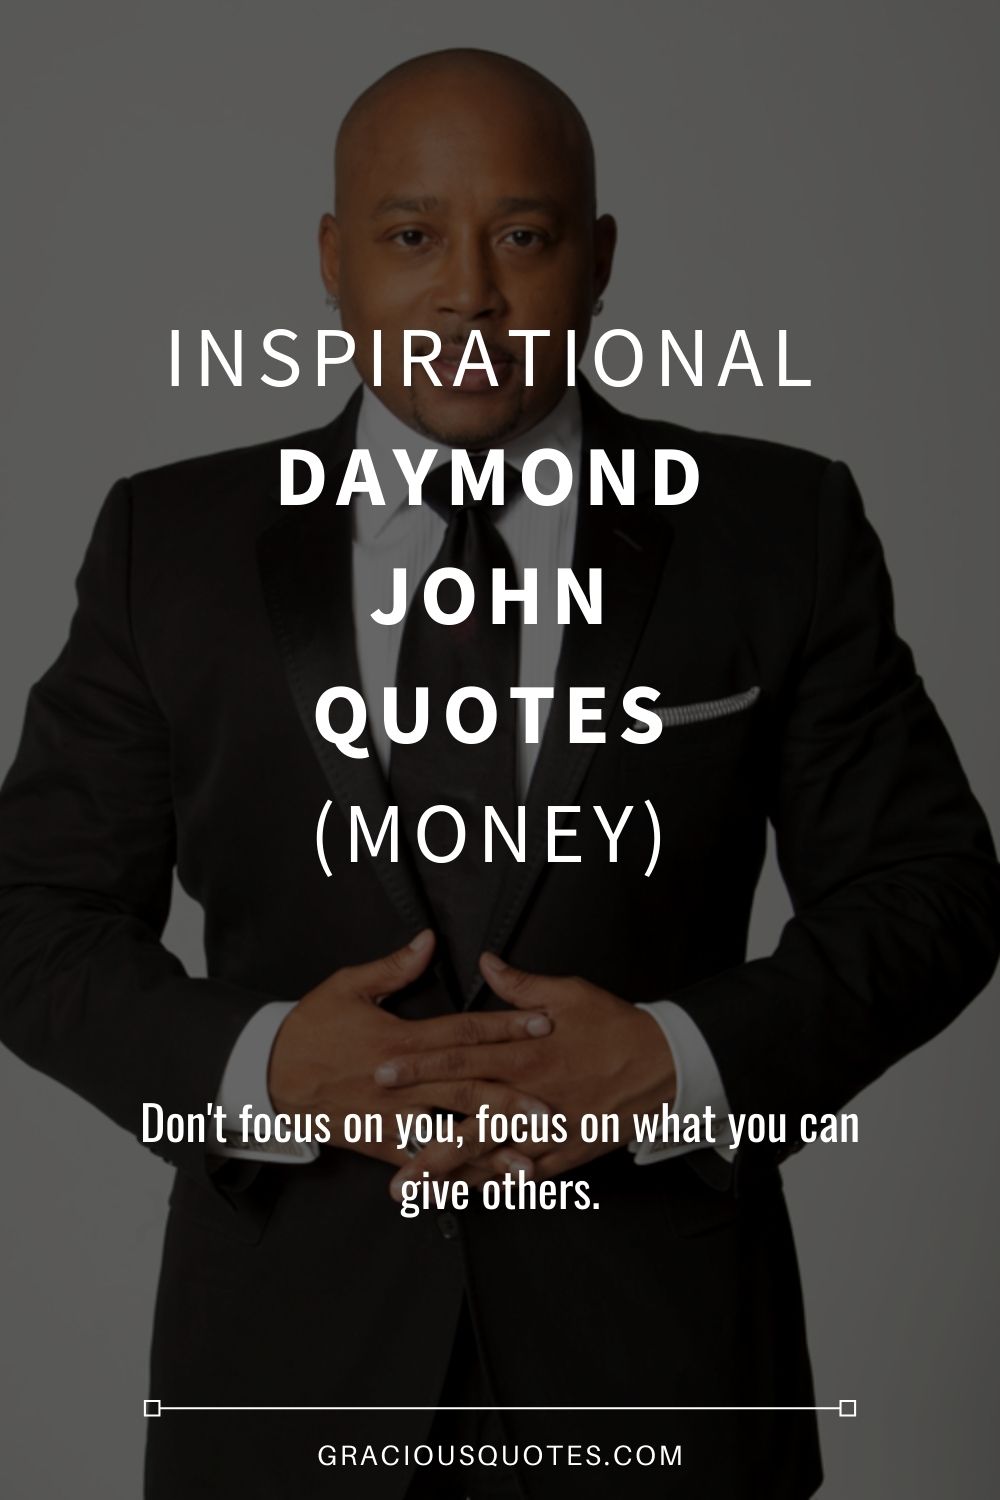 Inspirational Daymond John Quotes (MONEY) - Gracious Quotes